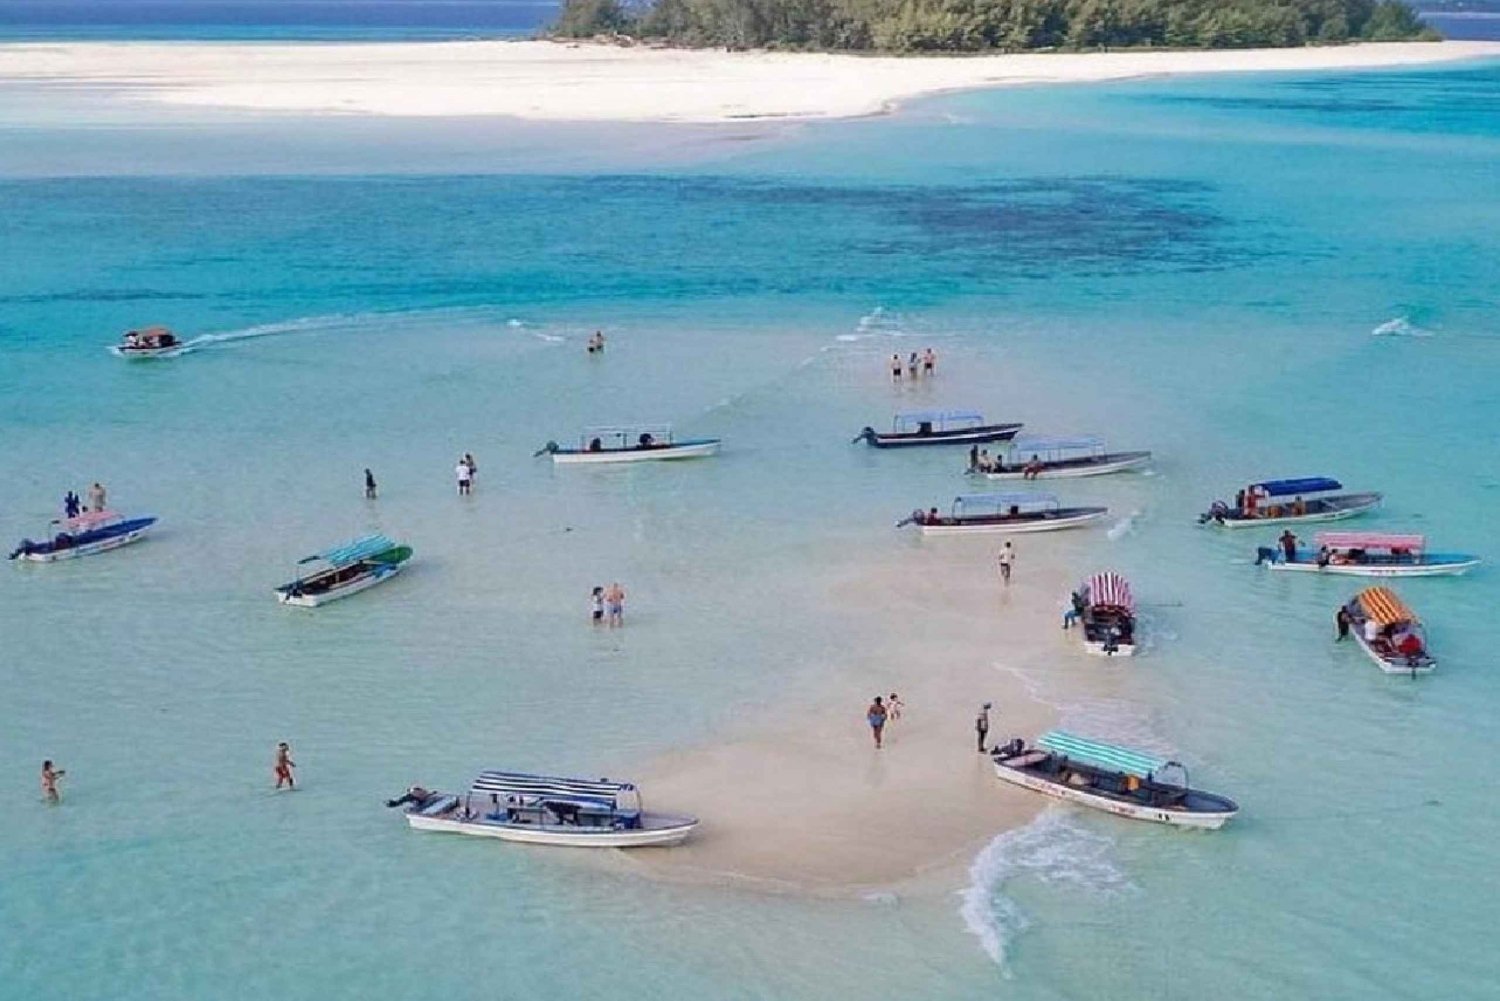 Zanzibar: Excursão particular para mergulho com snorkel na Ilha Mnemba com serviço de busca